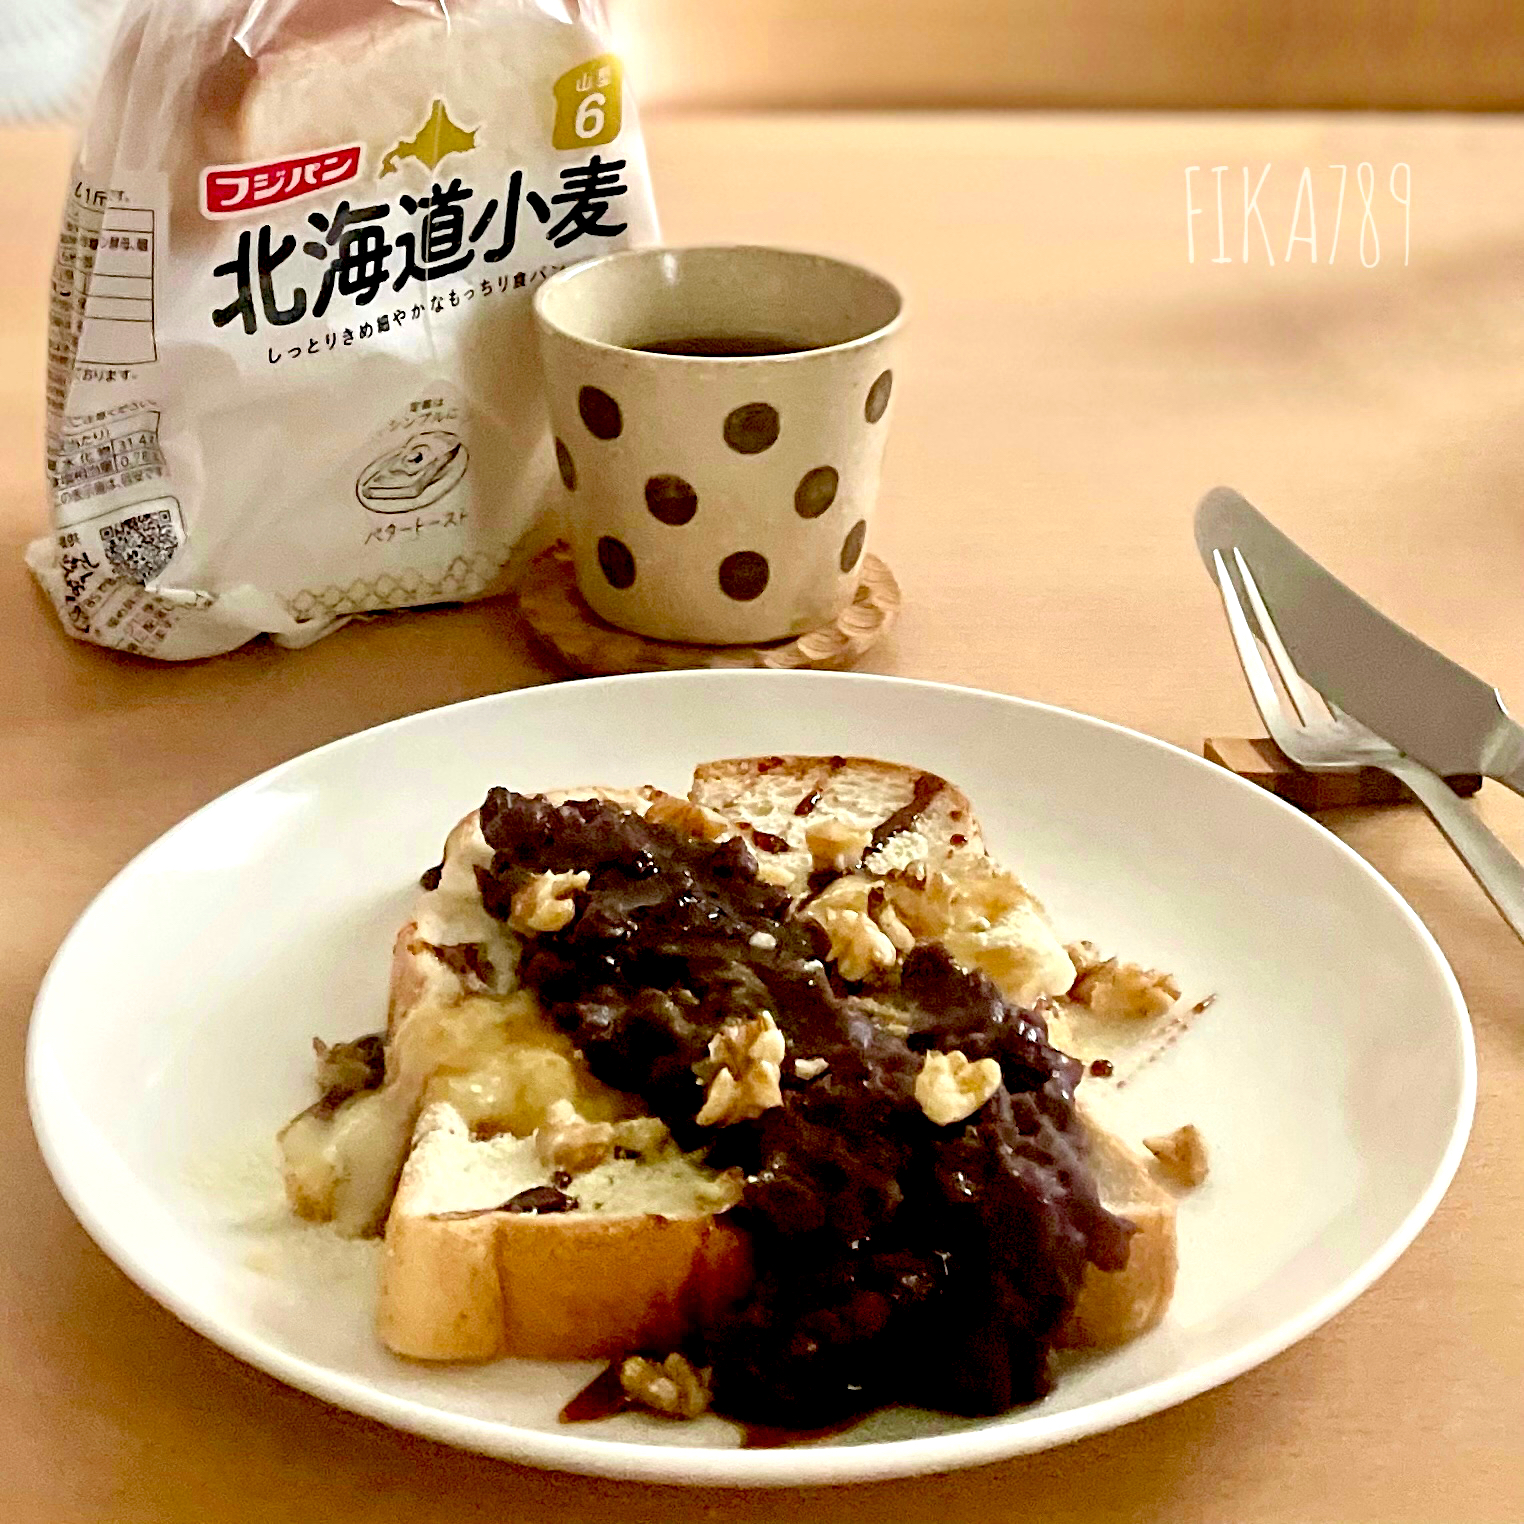 いっちゃんさんの料理 インジョルミトースト韓国🇰🇷(きな粉餅)